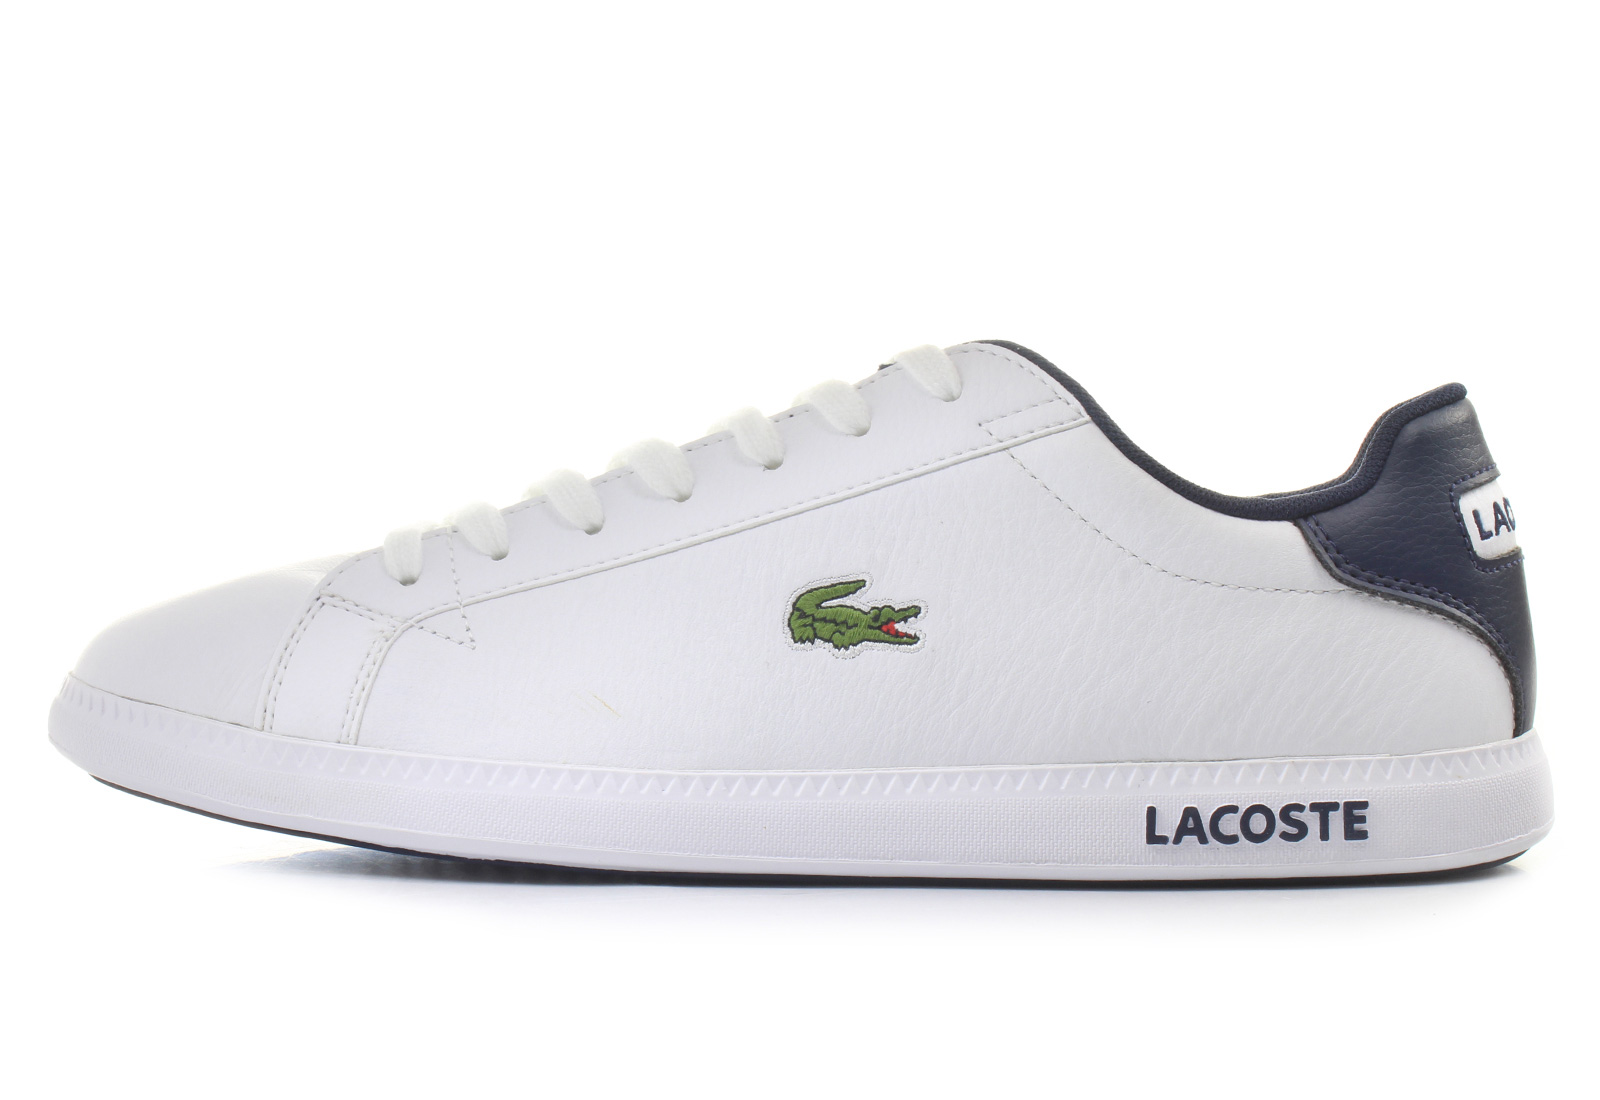 Lacoste Shoes - graduate - 161spm0096-x96 - Online shop for sneakers ...